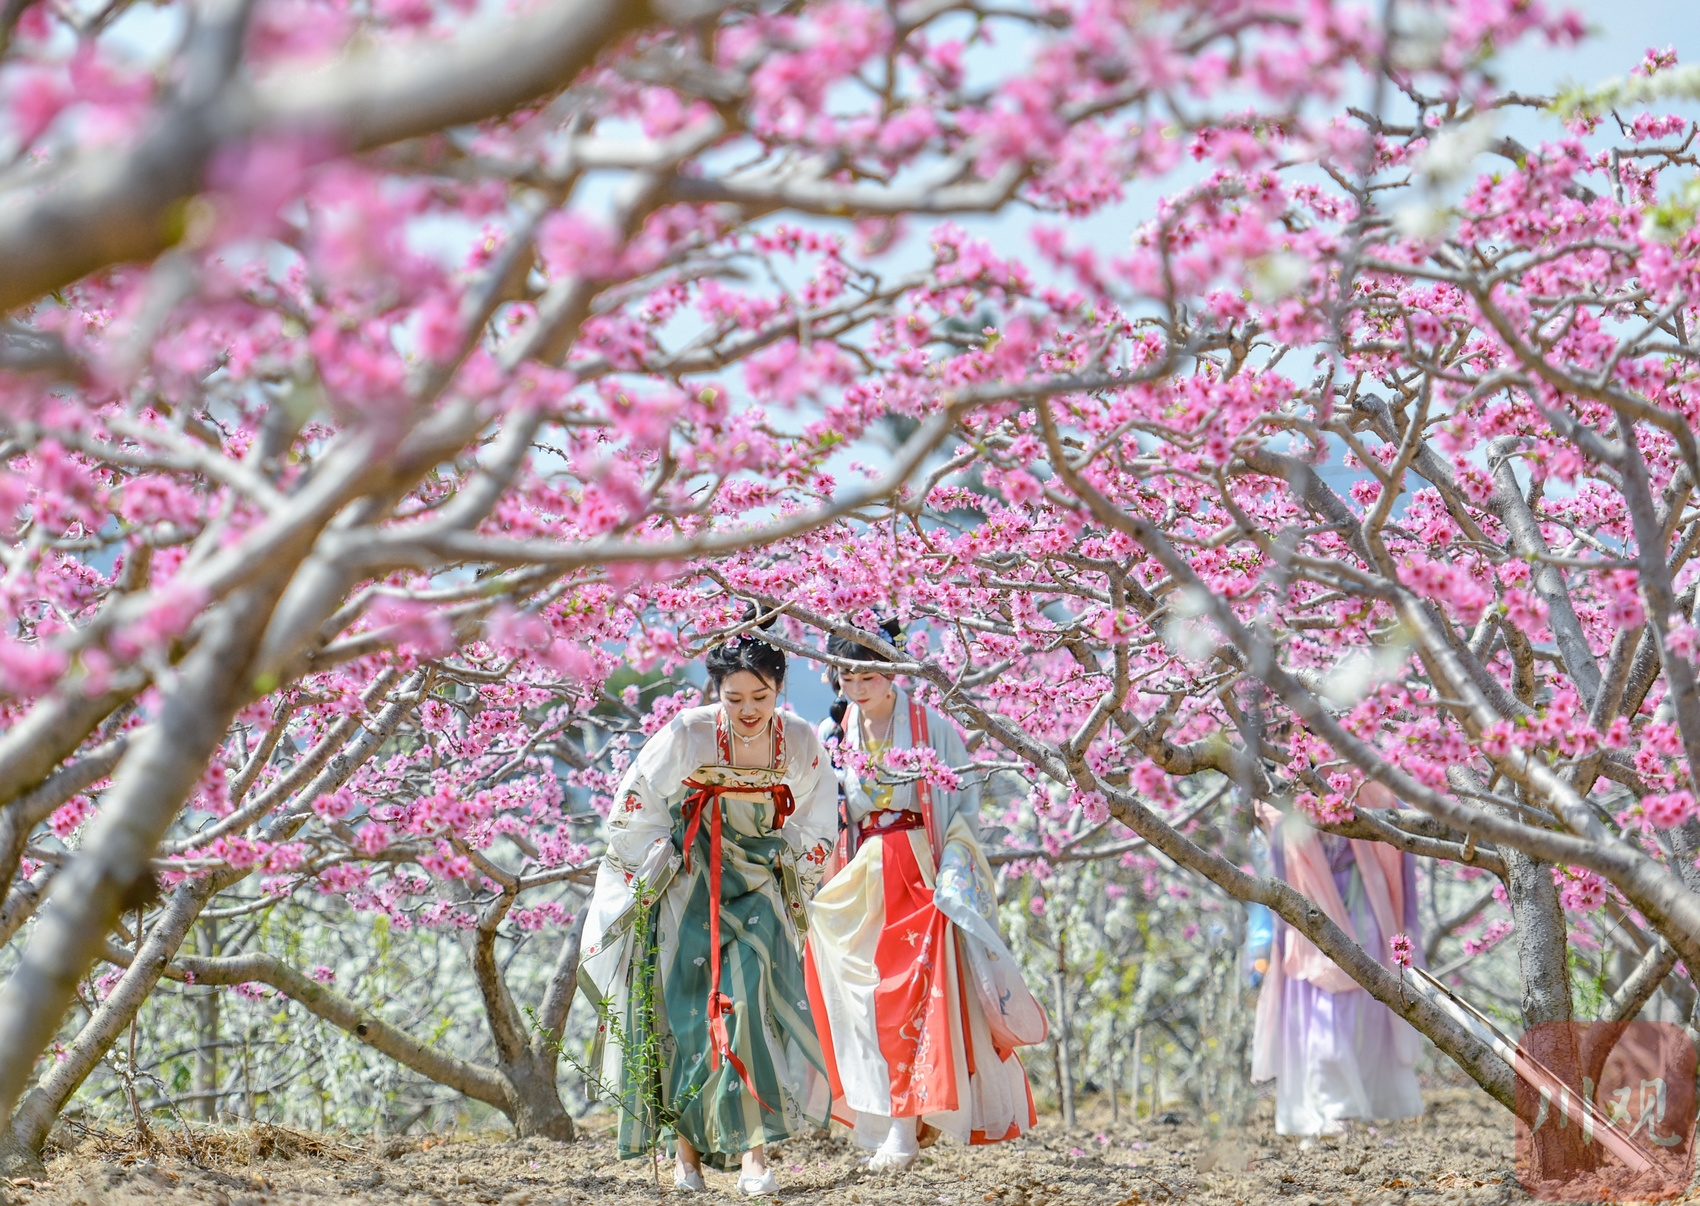 婚紗造型│夢幻花仙子 | Wphoto婚紗攝影線上雜誌